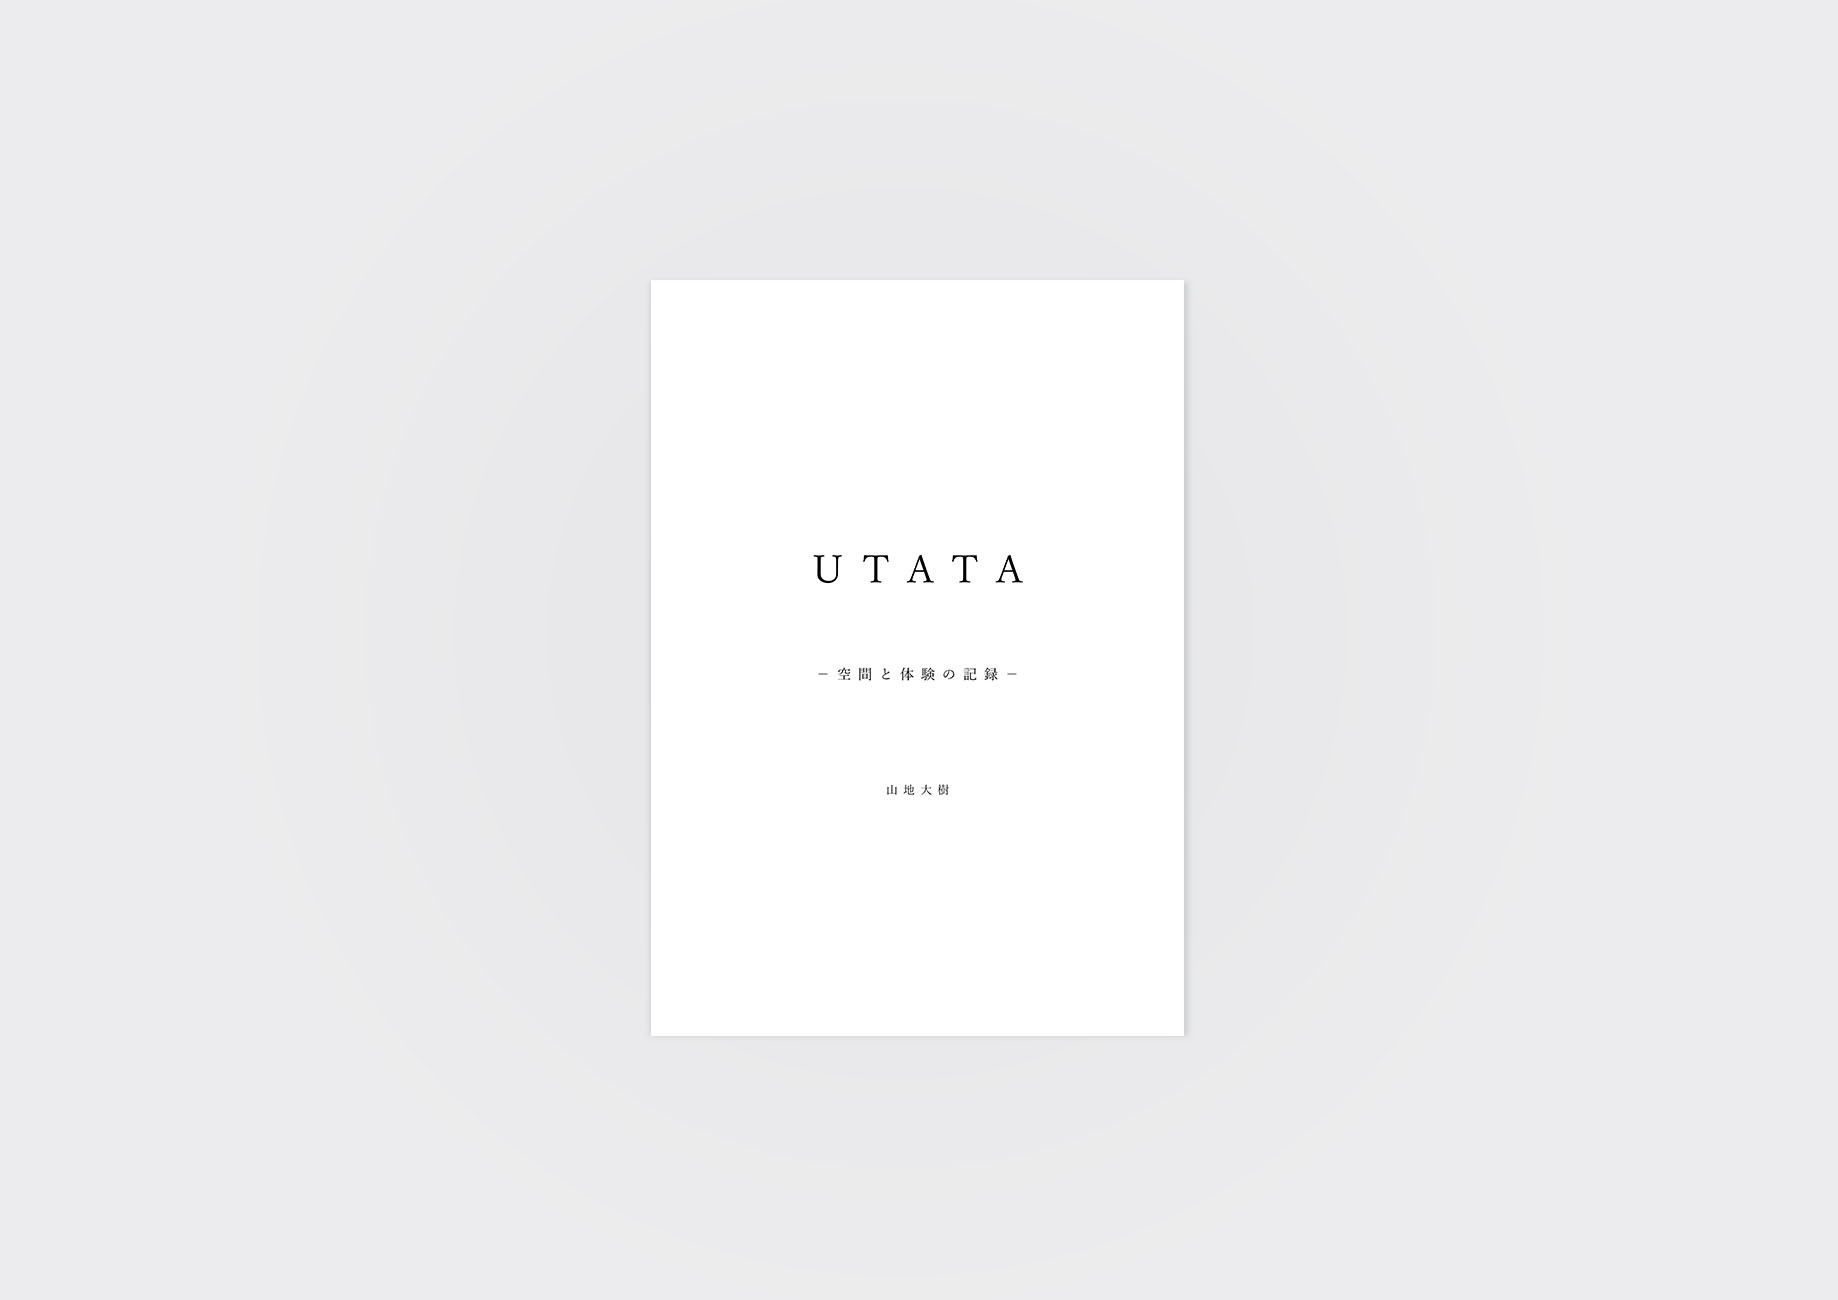 UTATAの本の表紙の写真